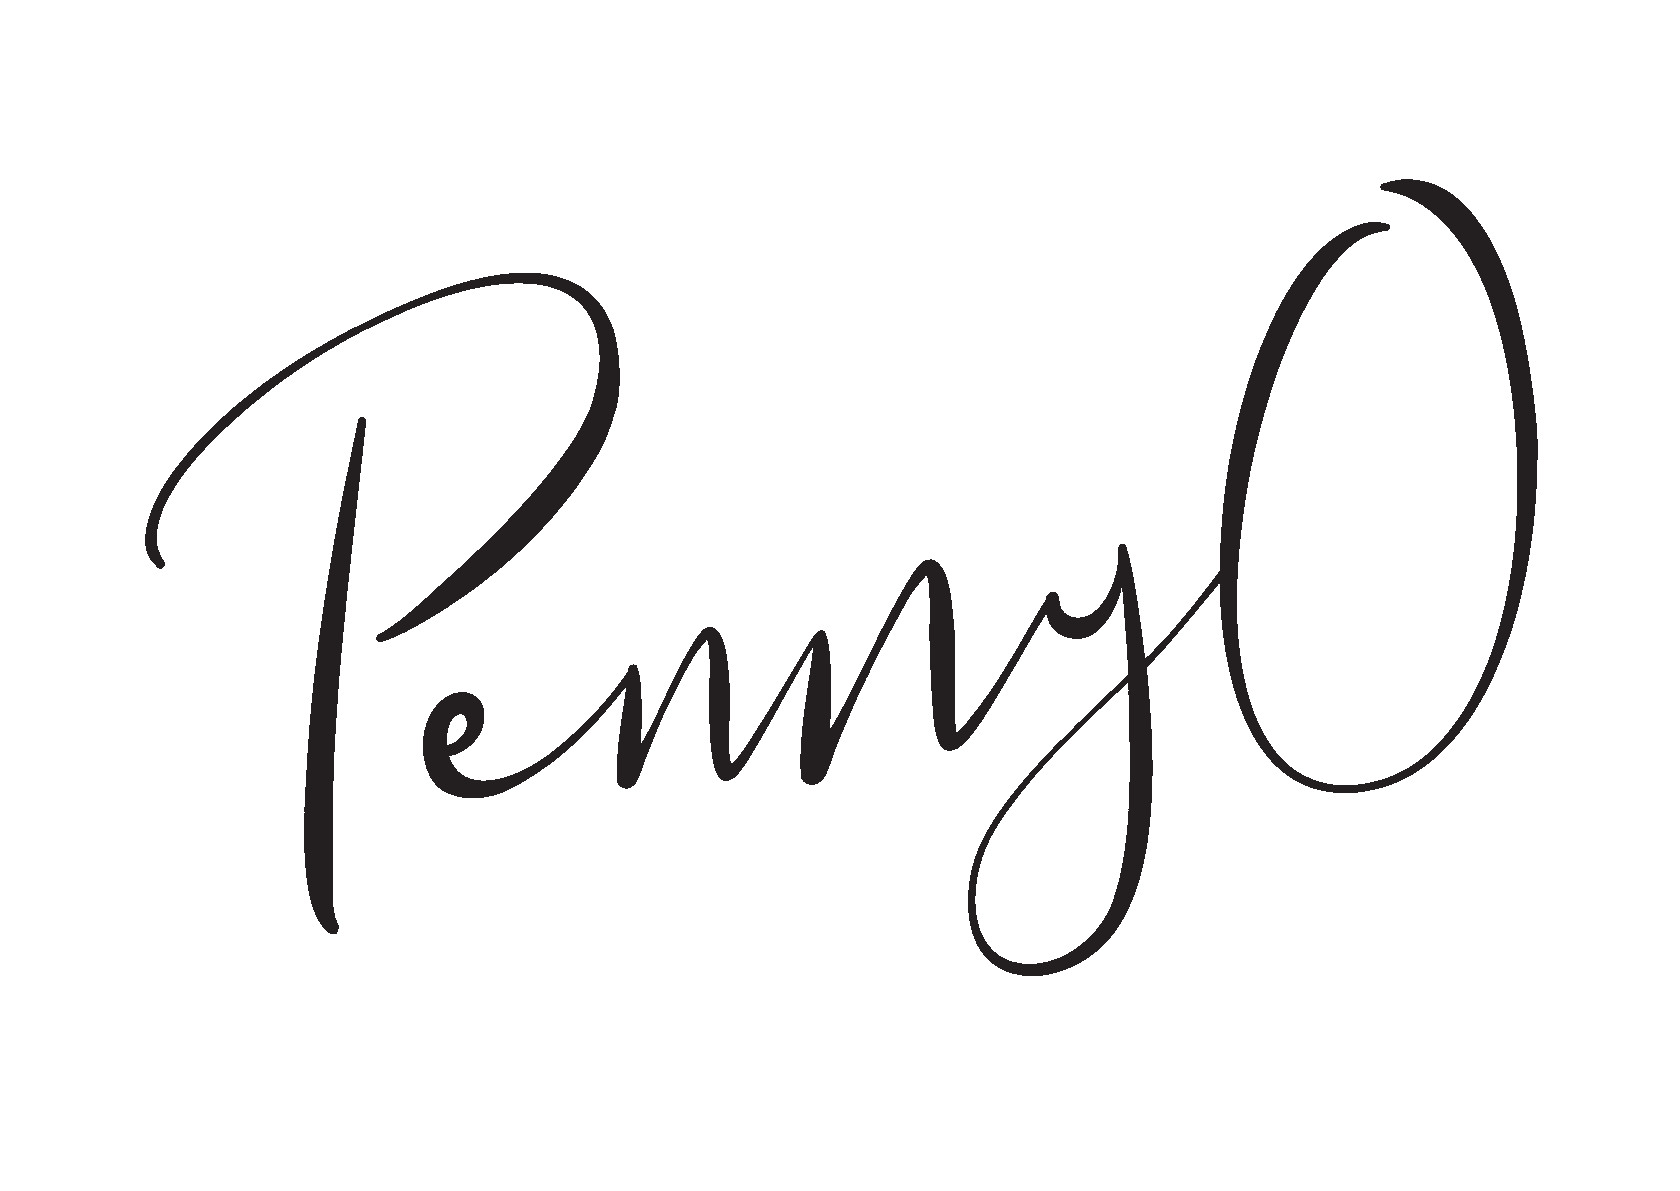 Penny O